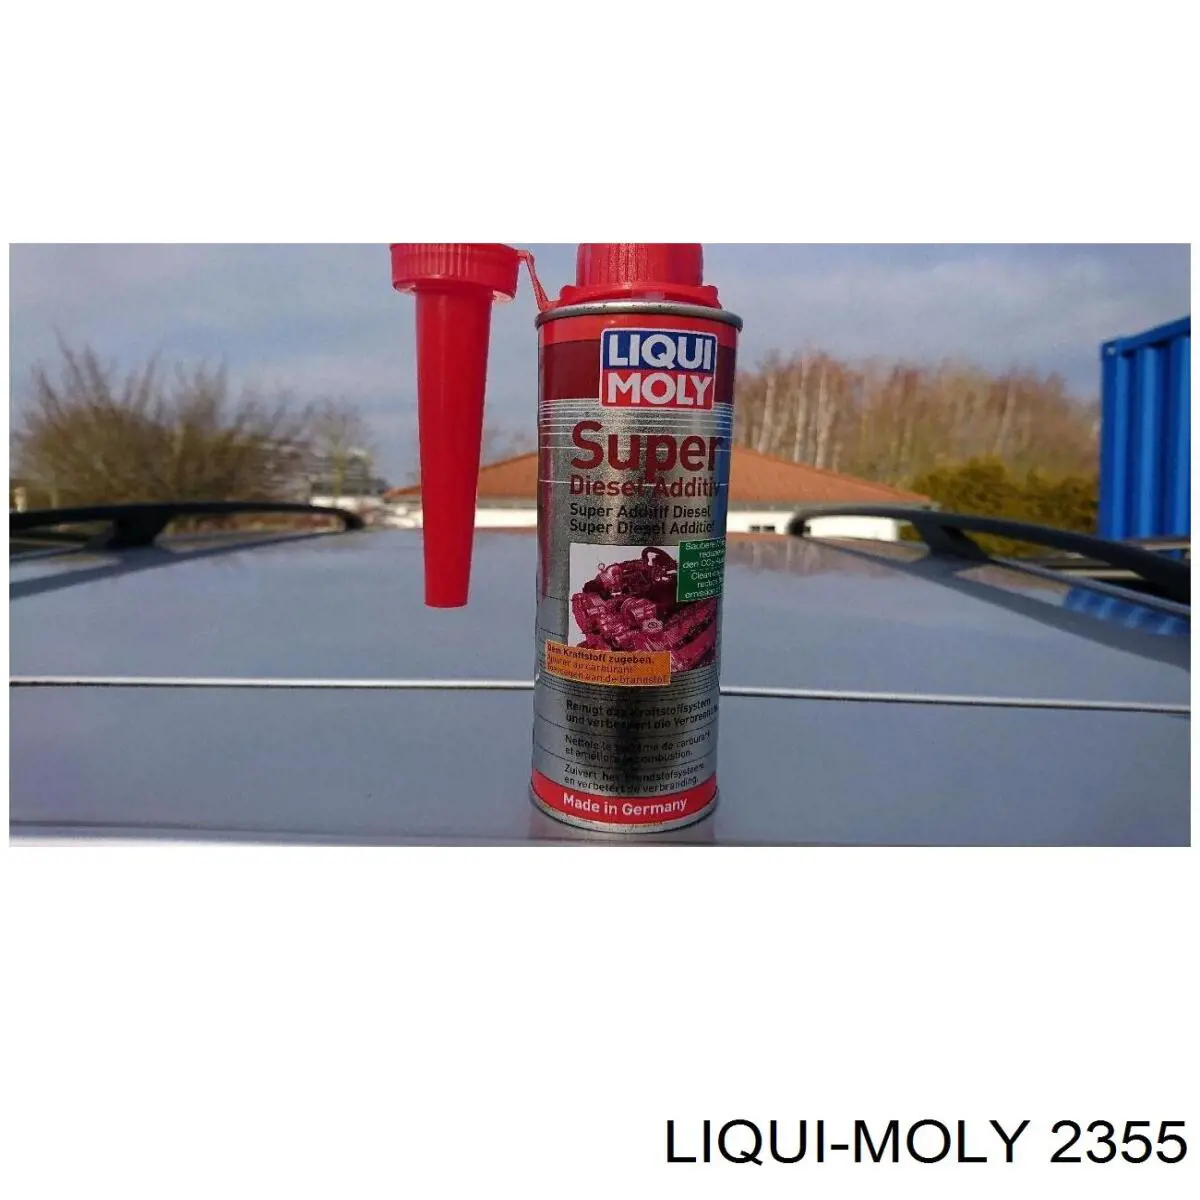 2355 Liqui Moly - Diesel-Zusatz LANGZEIT DIESEL ADDITIV, 250 ml